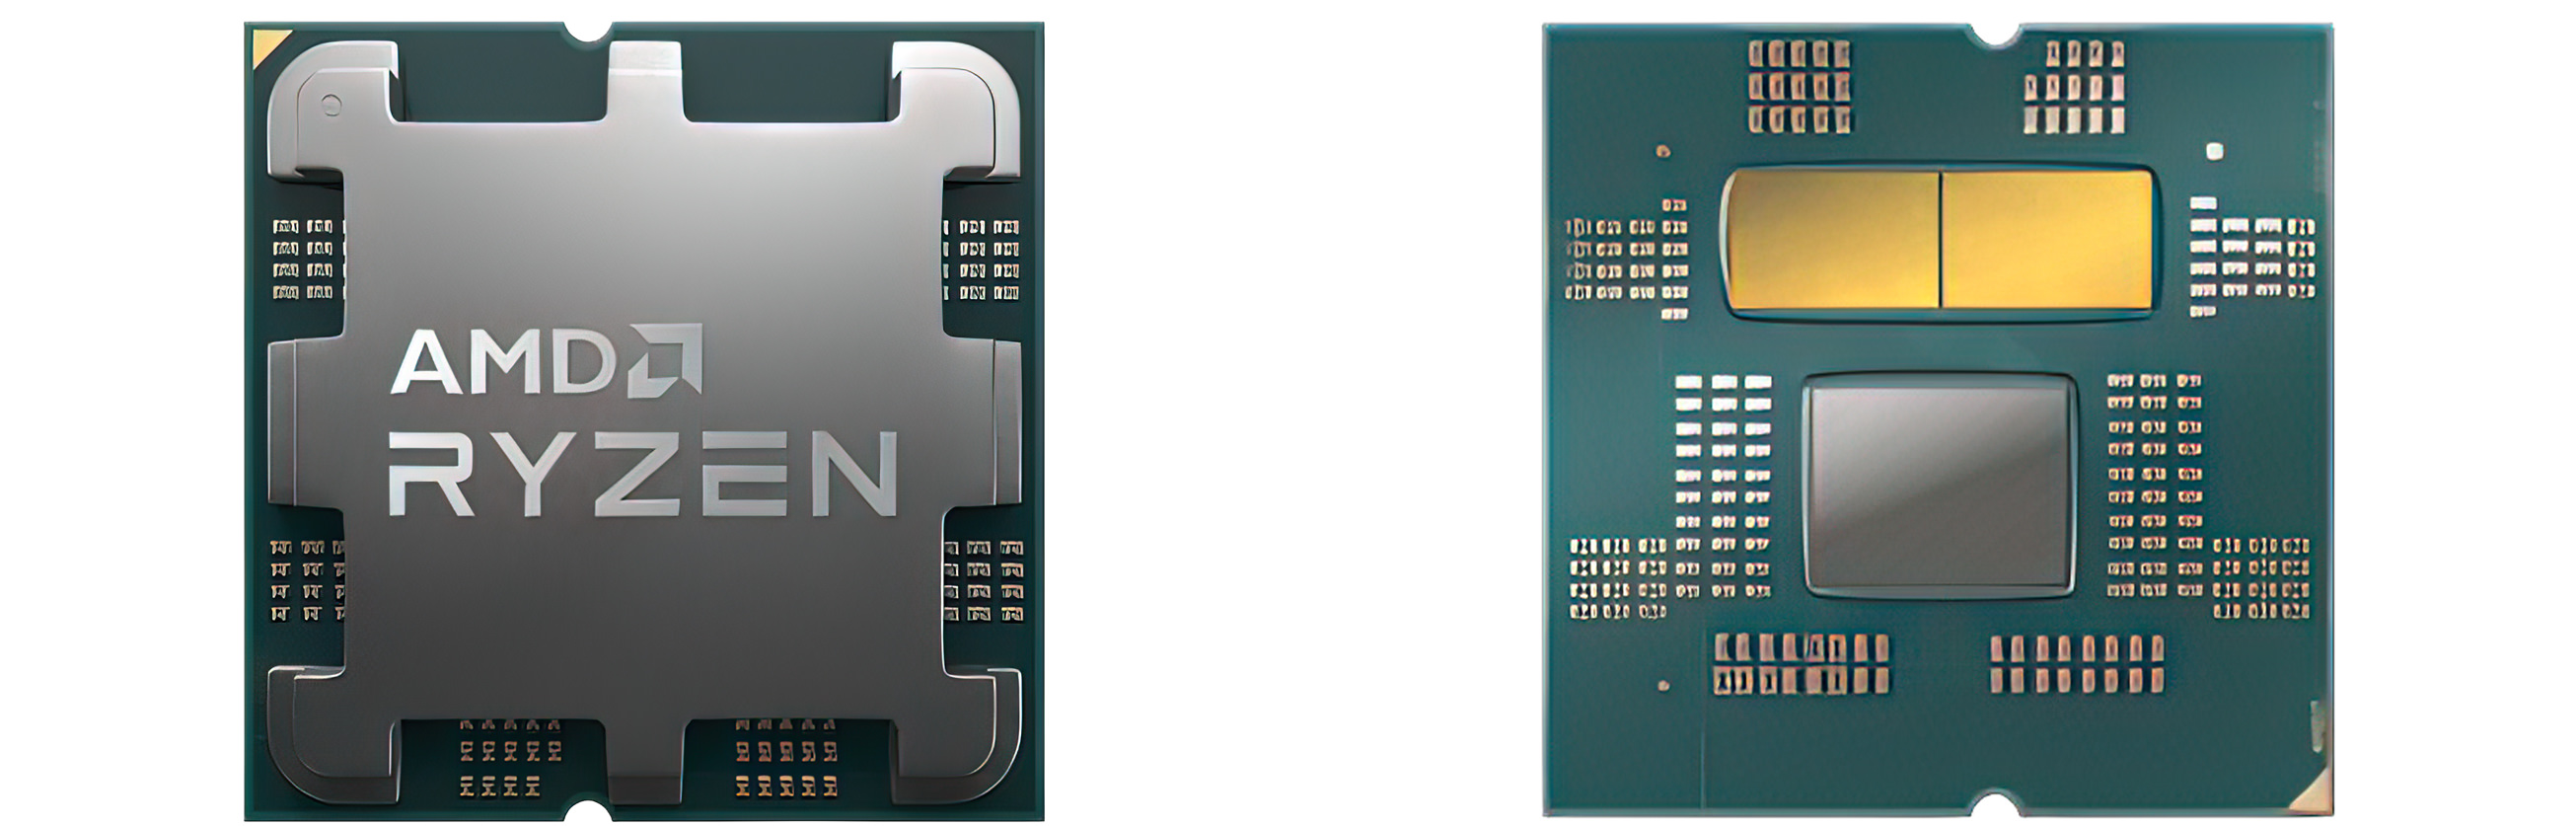 پردازنده AMD Ryzen 7000 از نمای جلو و پشت